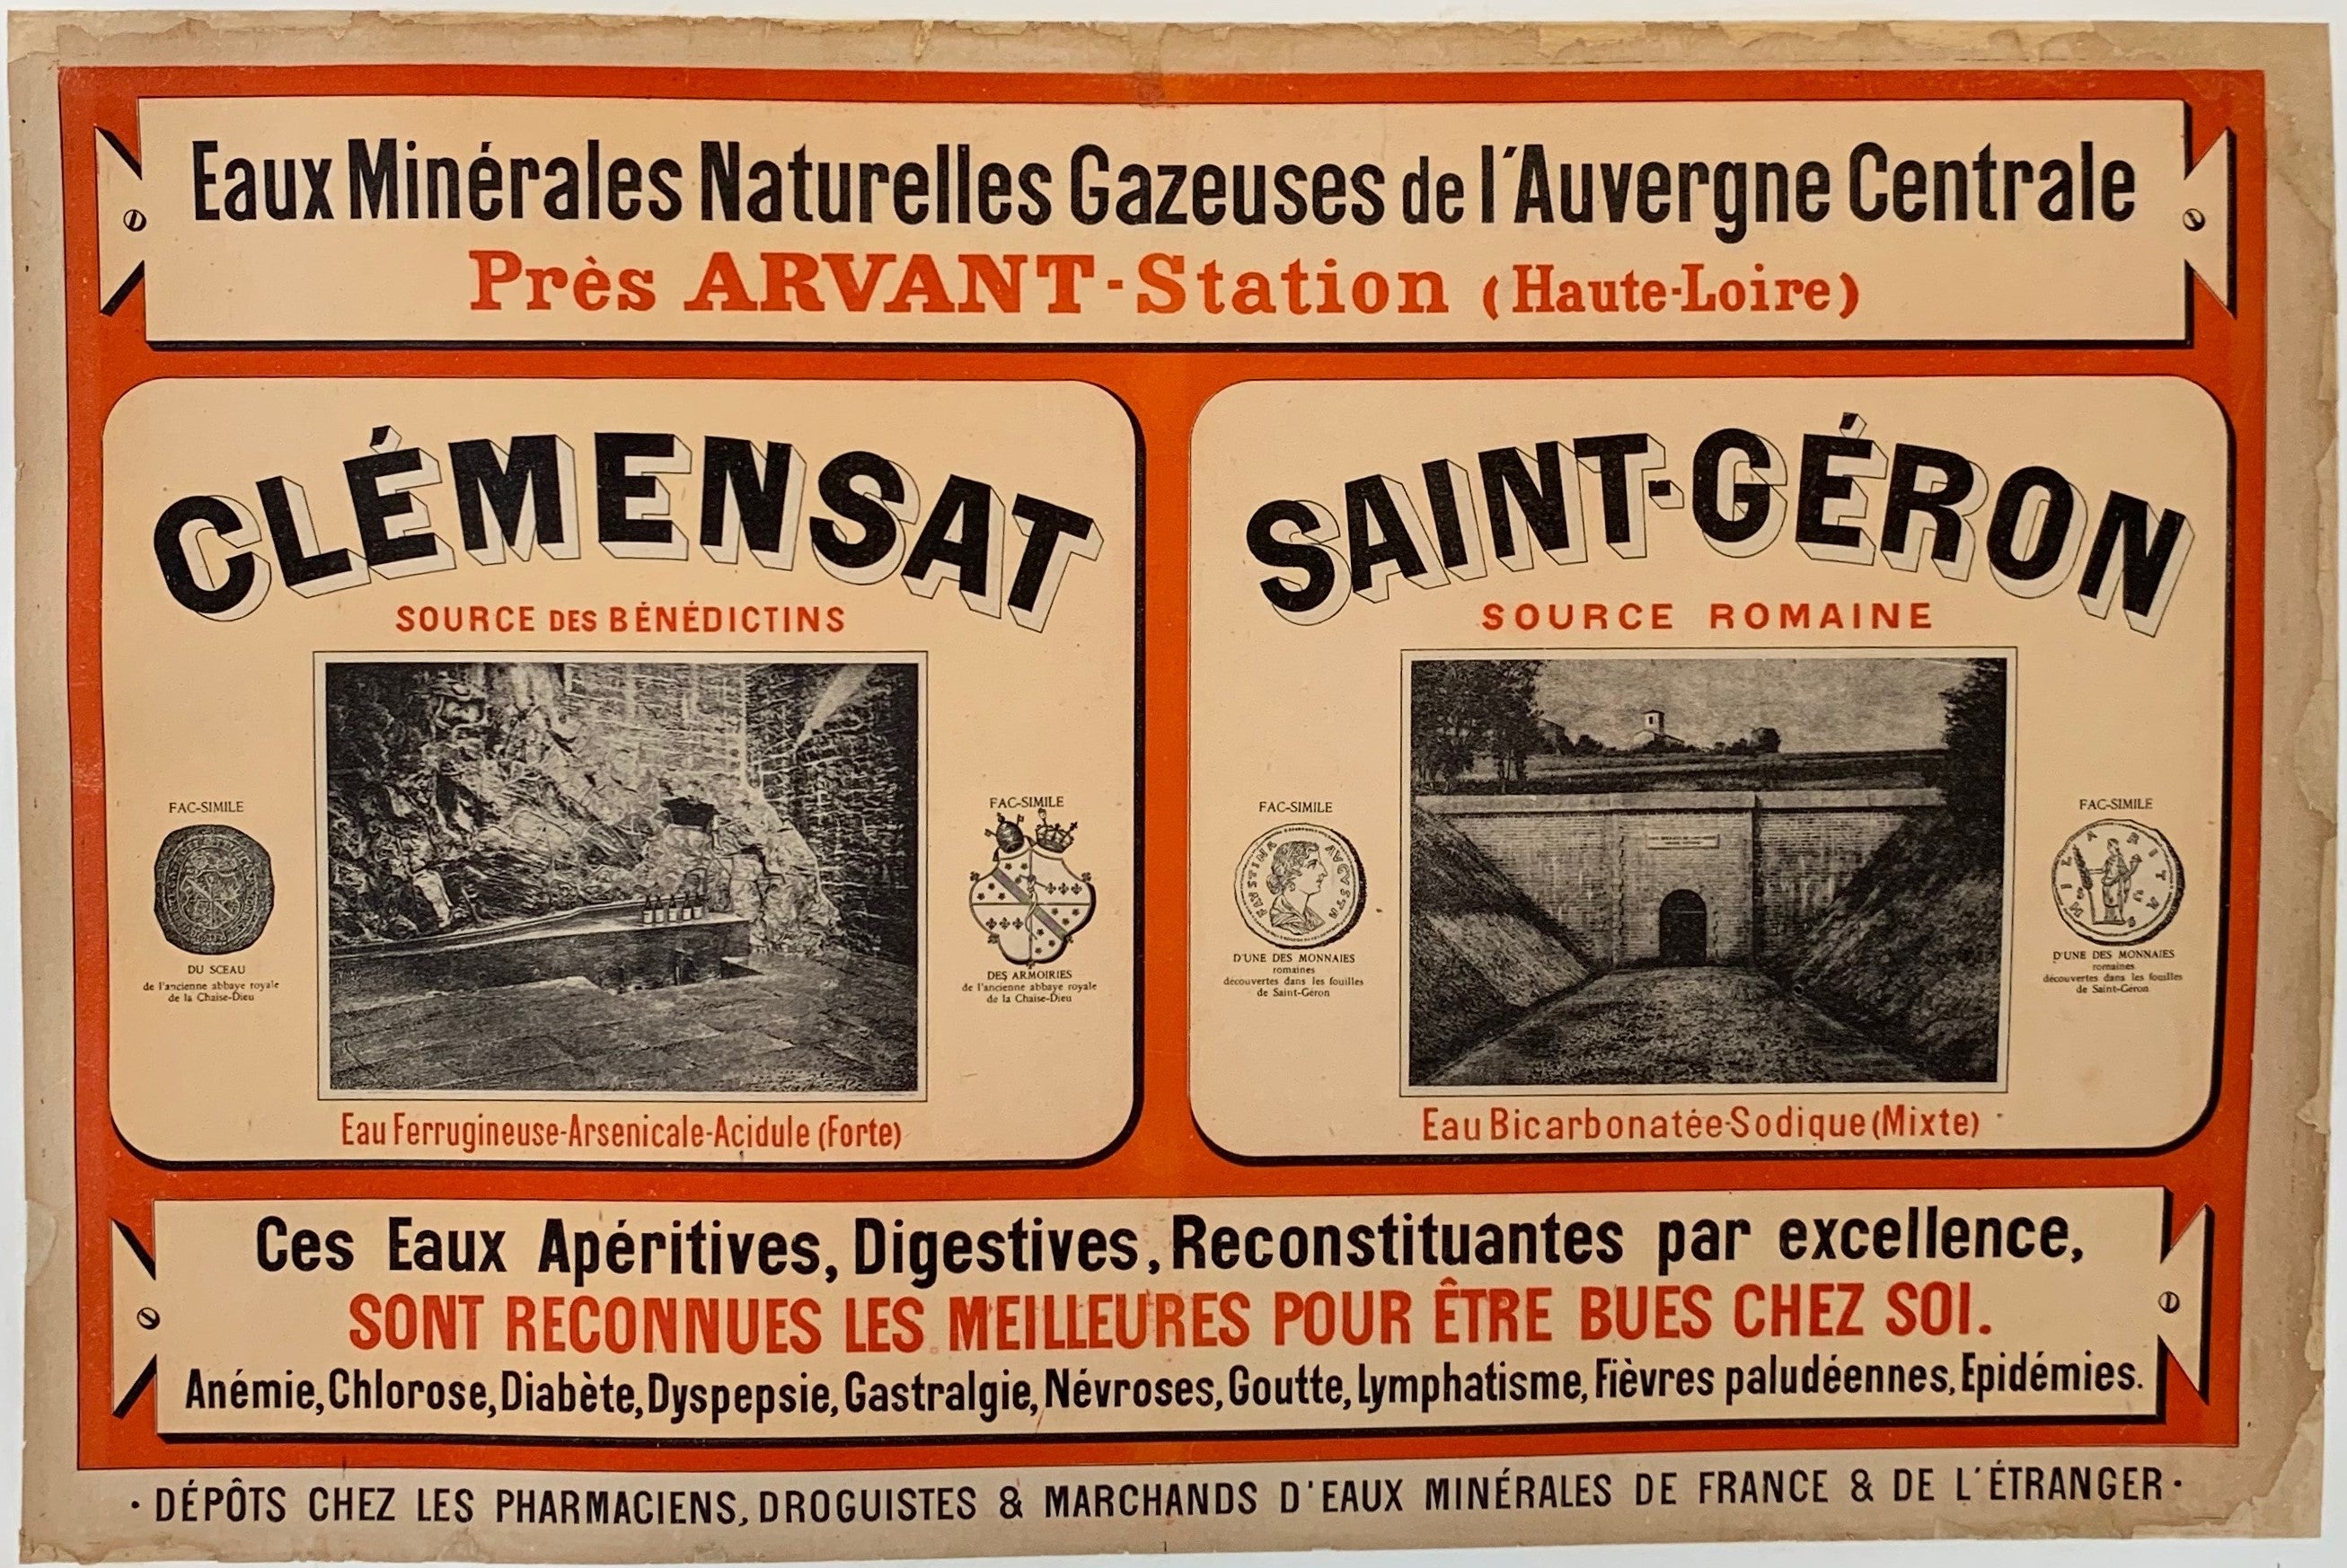 Eaux Minerales Naturelles Gazeuses de l'Auvergne Centrale